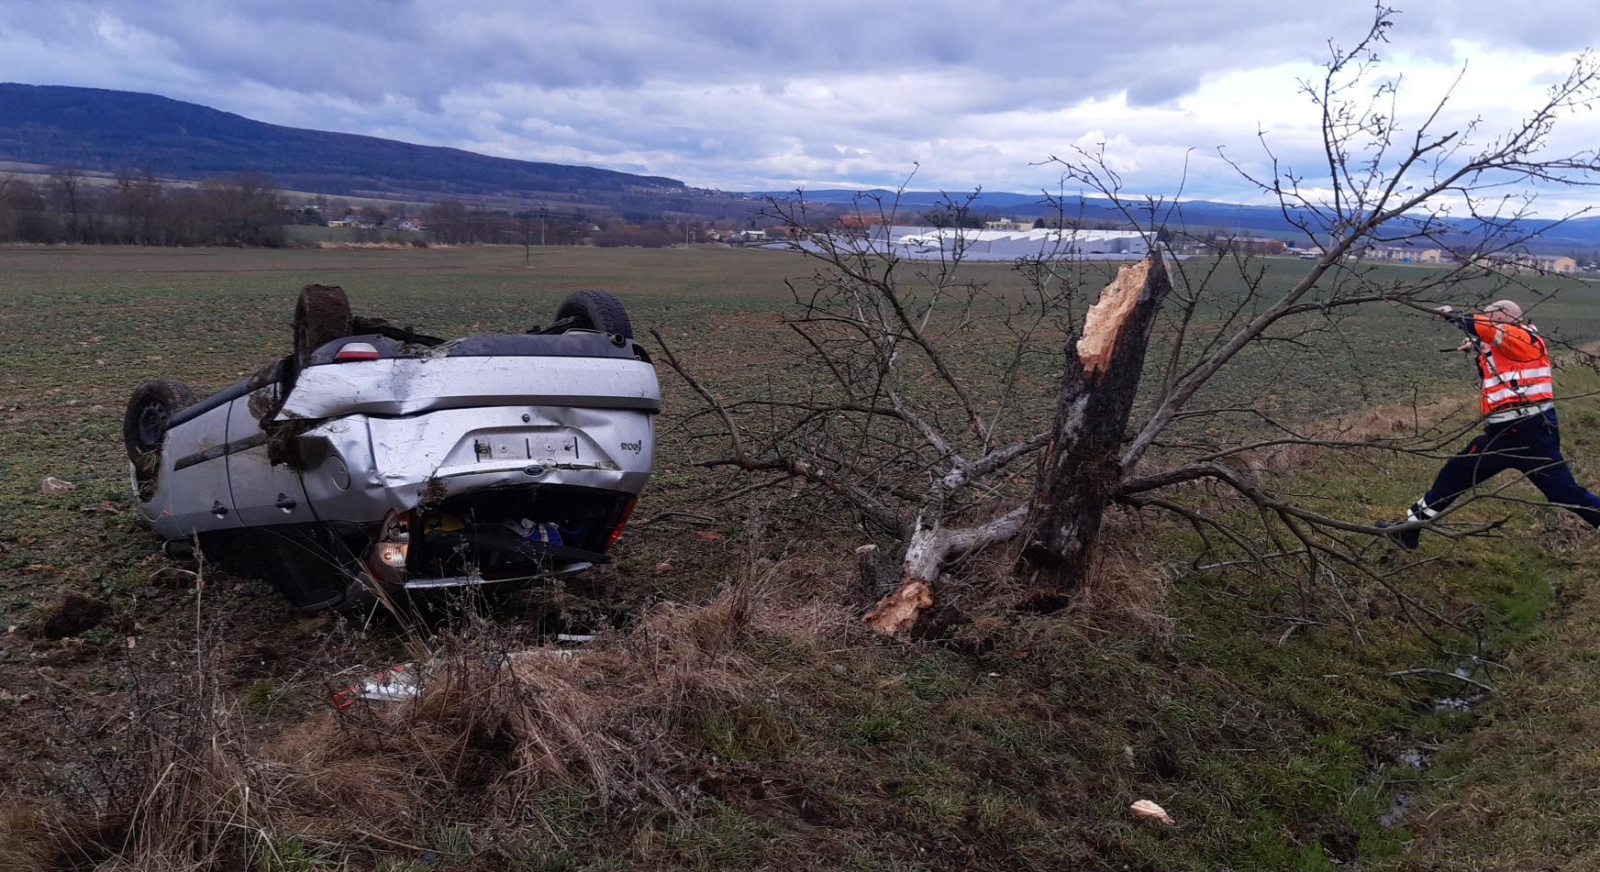 028-Havárie osobního automobilu u Hostomic v okrese Beroun.jpg